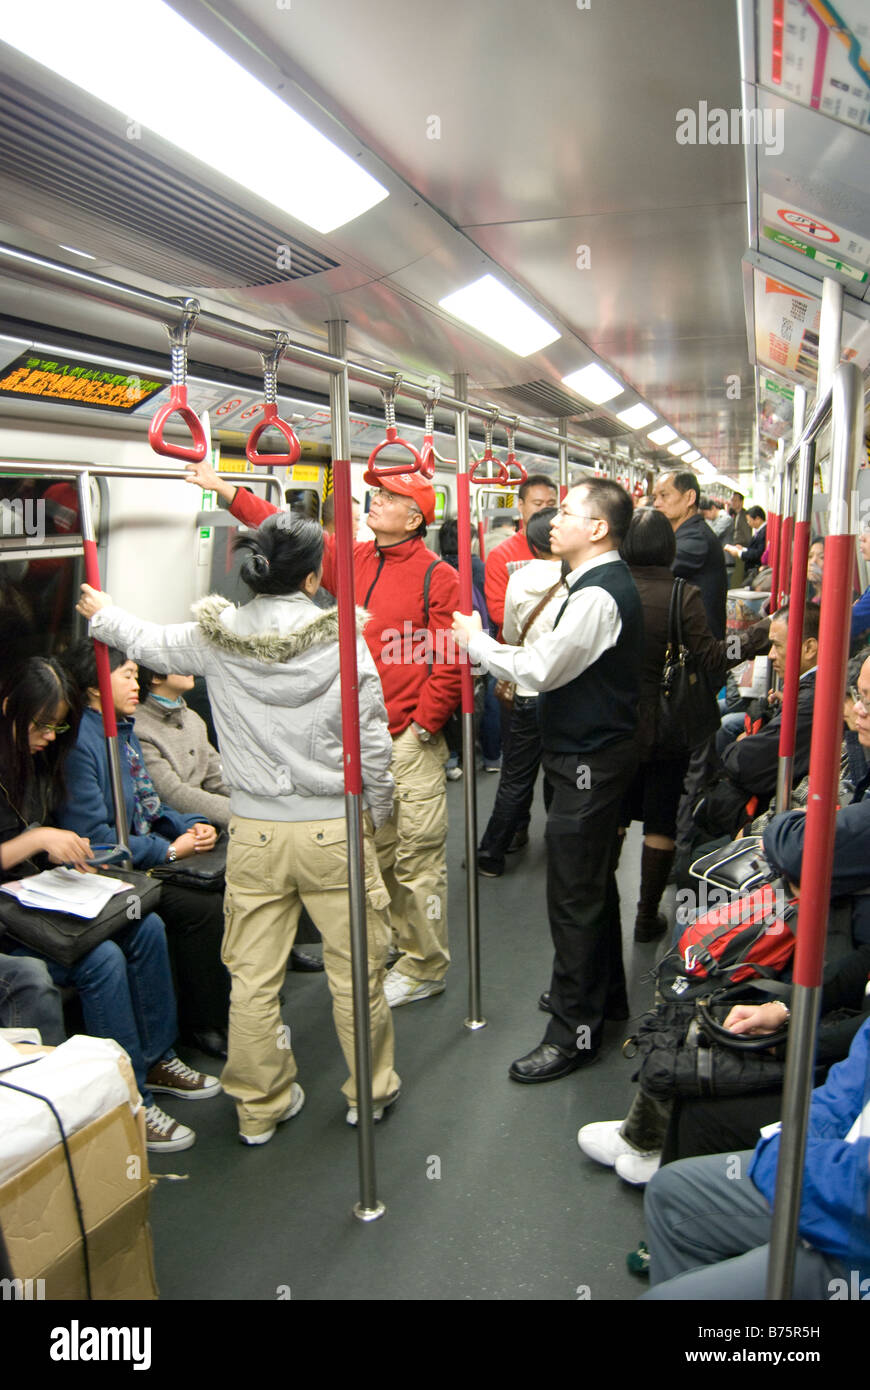 Carrello affollate, MTR metropolitana Tsim Sha Tsui, la Penisola di Kowloon, Hong Kong, Repubblica Popolare di Cina Foto Stock